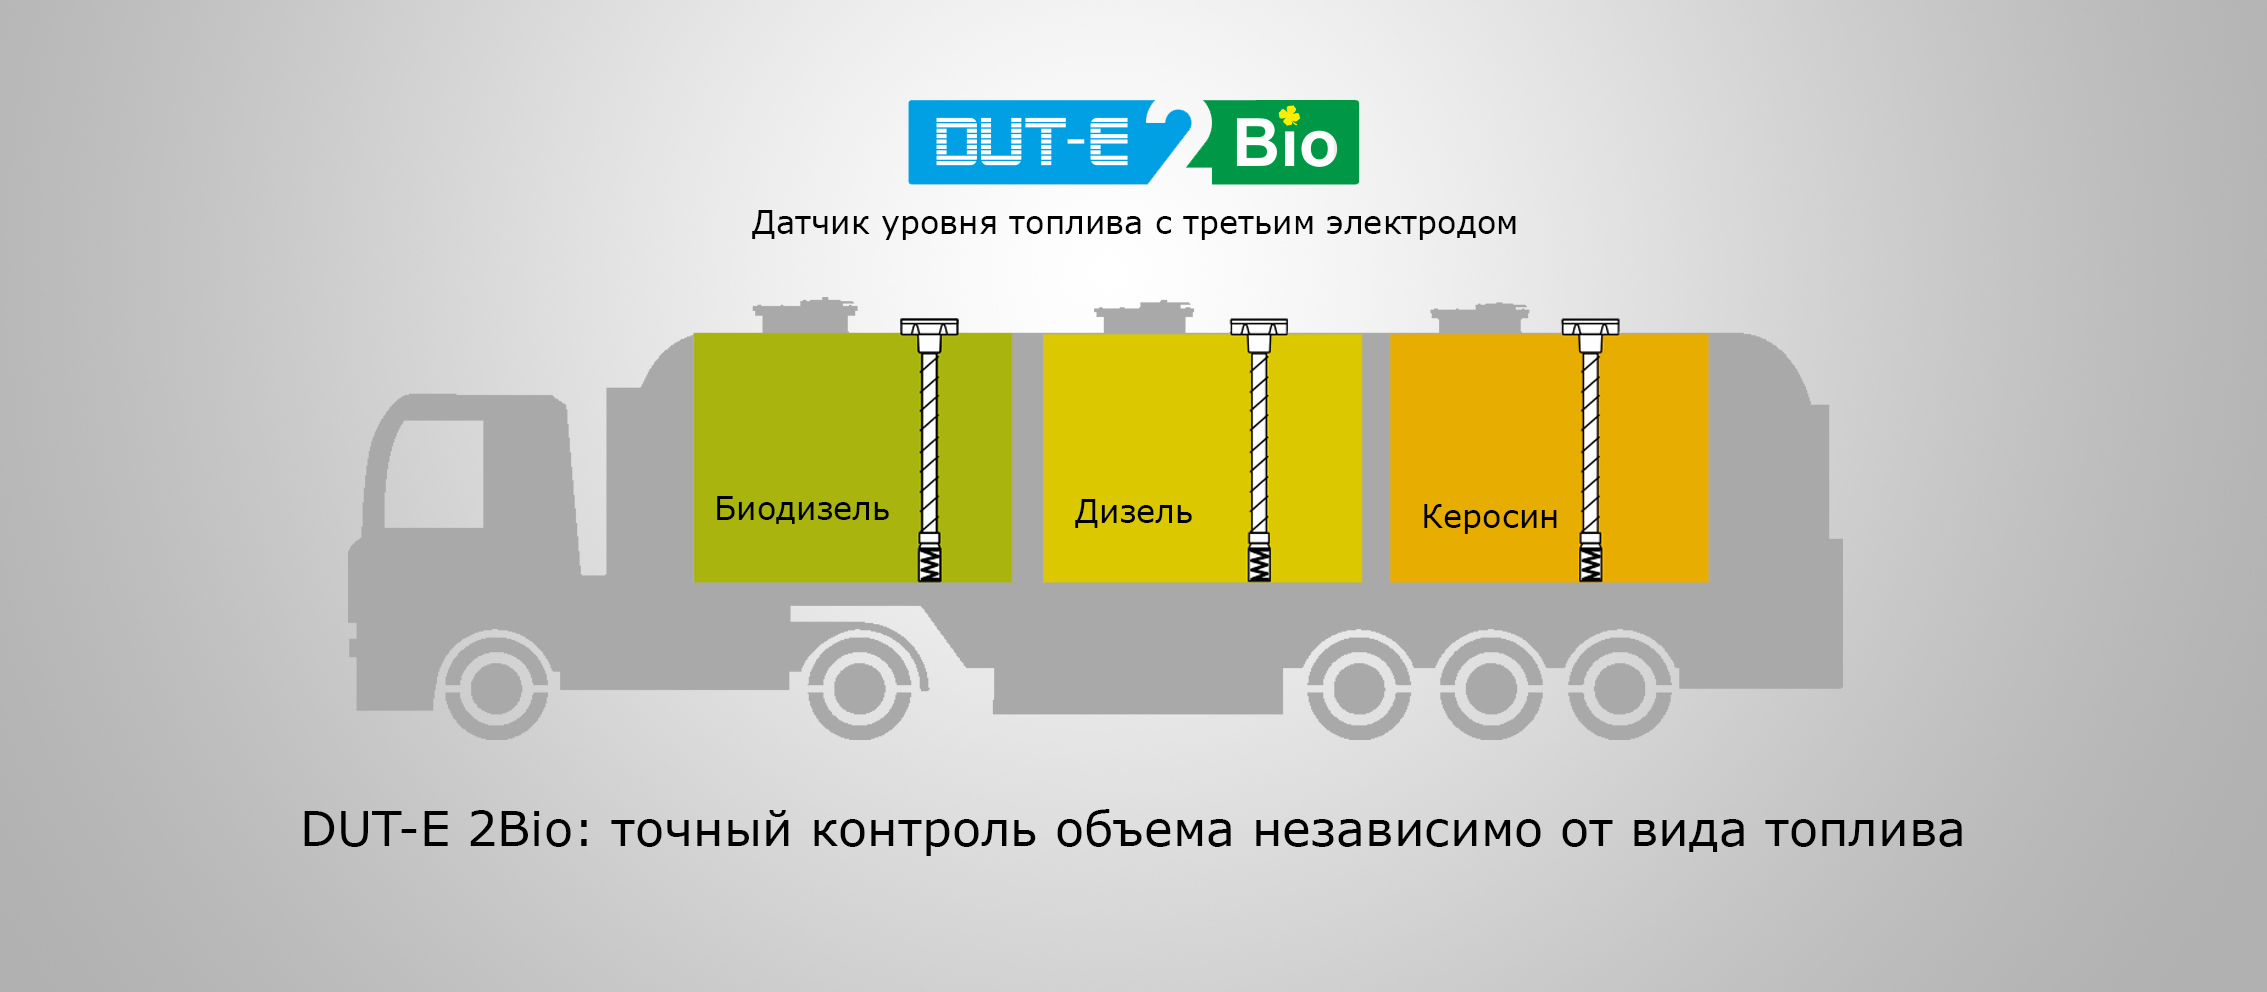 DUT-E 2Bio: точный контроль объёма независимо от вида топлива